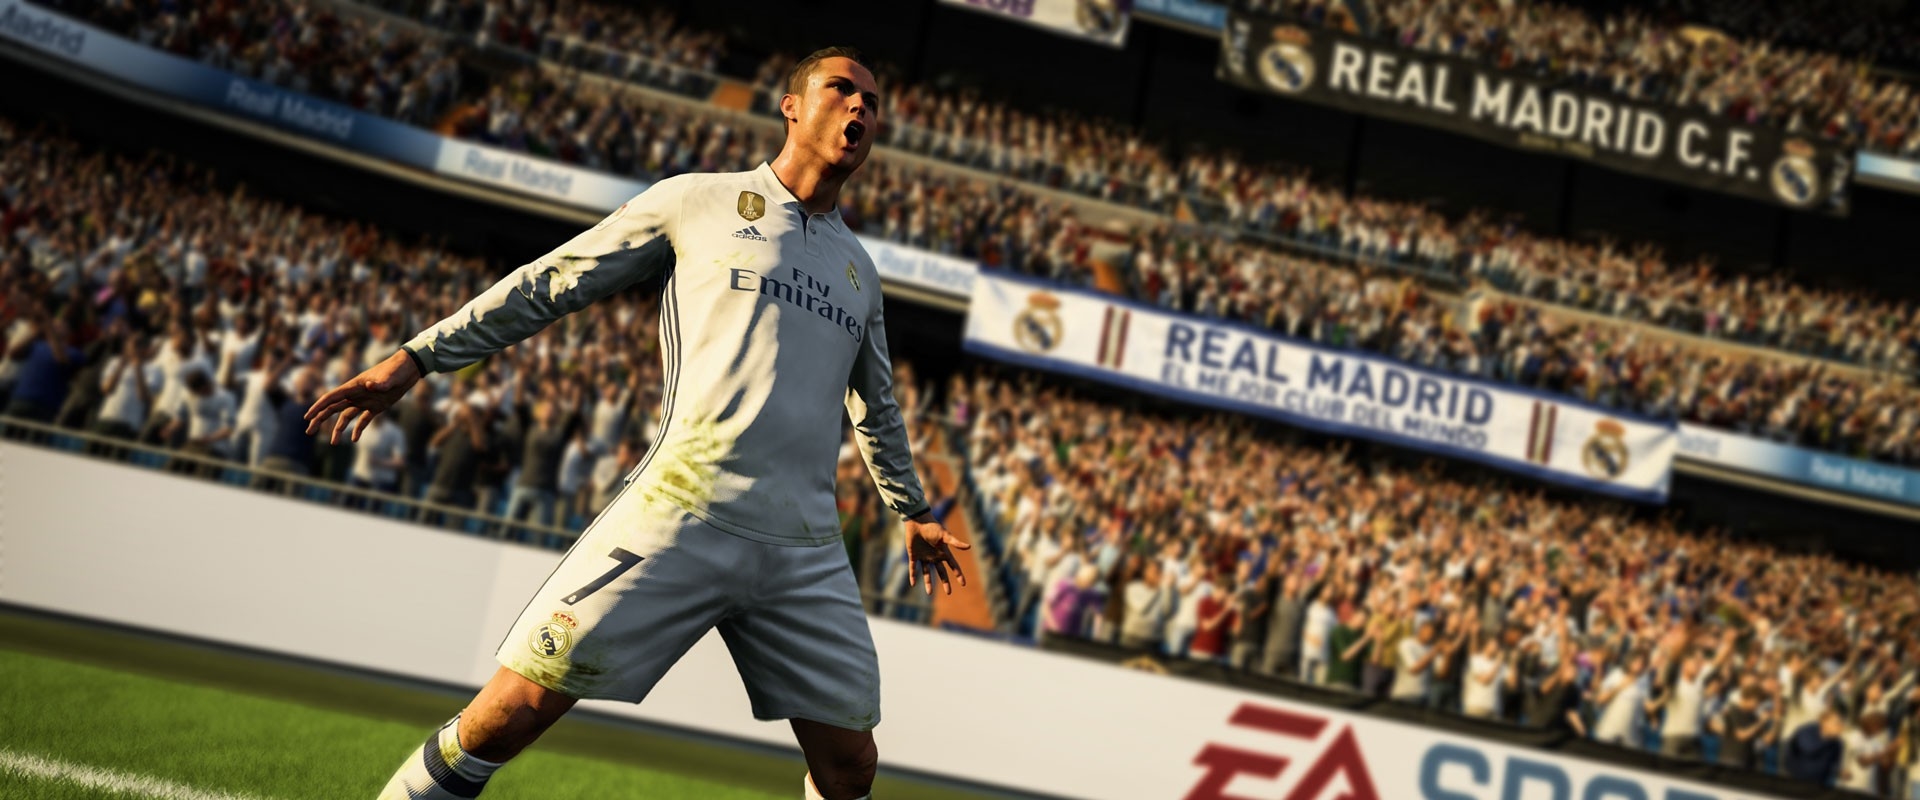 Tökéletes mozgás és átigazolási dráma az új FIFA 18 trailerekben